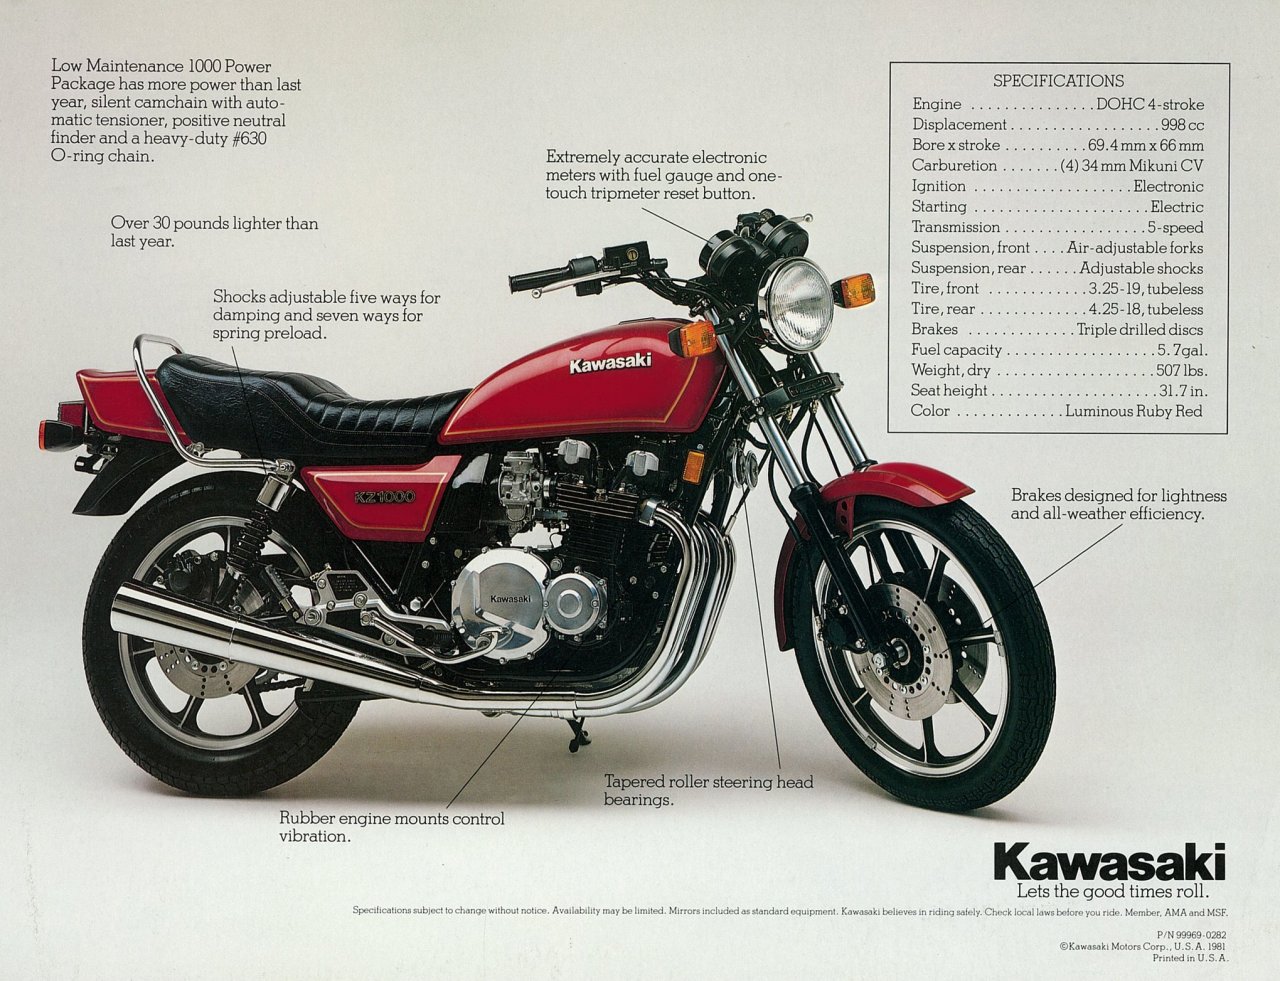 Kawasaki Kz1000 Information